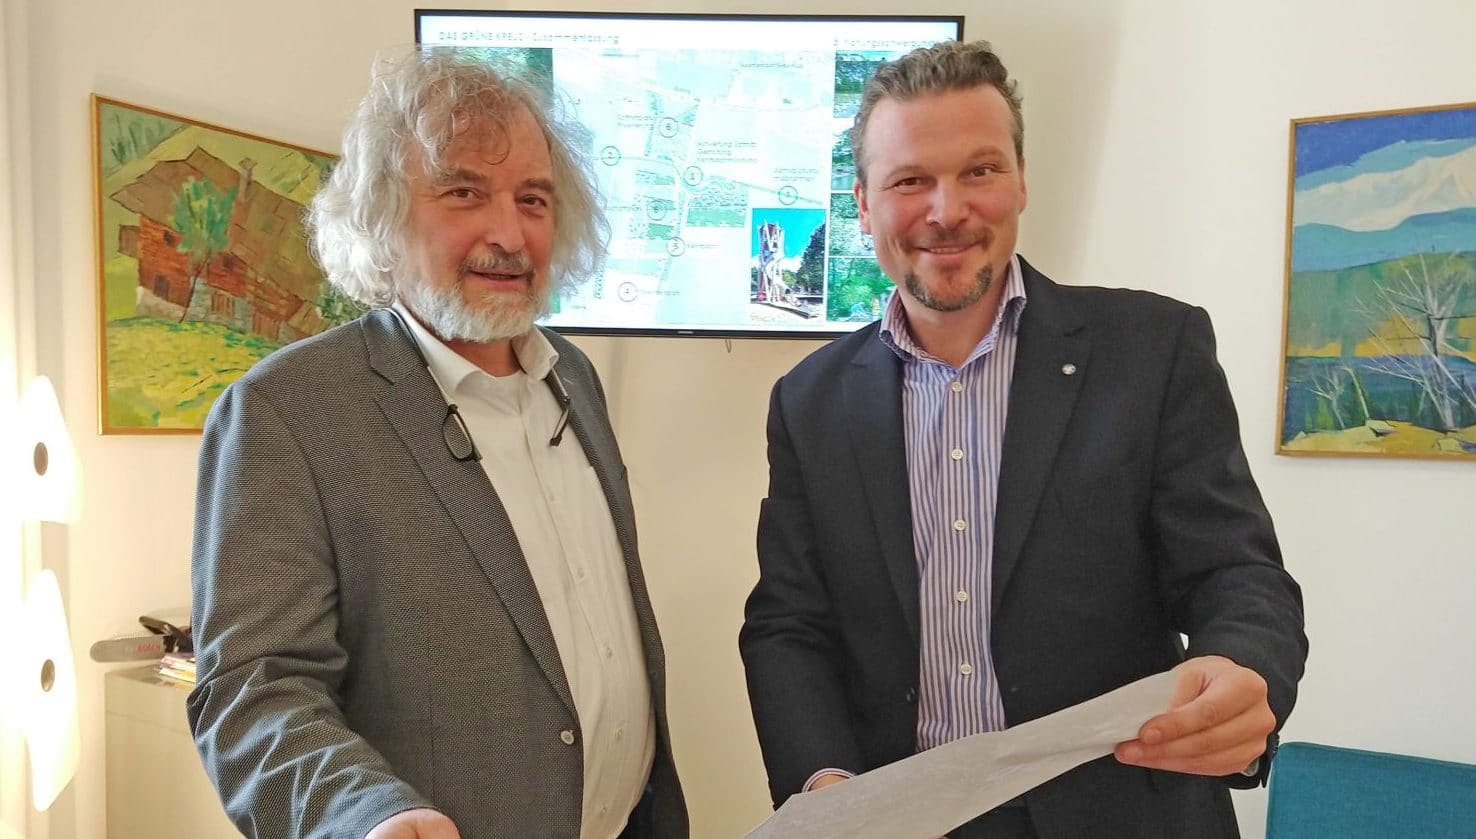 Die Stadträte Wolfgang Germ und Frank Frey präsentierten das
Hochwasserschutzprojekt Sattnitz und mögliche Visionen der künftigen
Freiraumgestaltung beim Sattnitzpark.